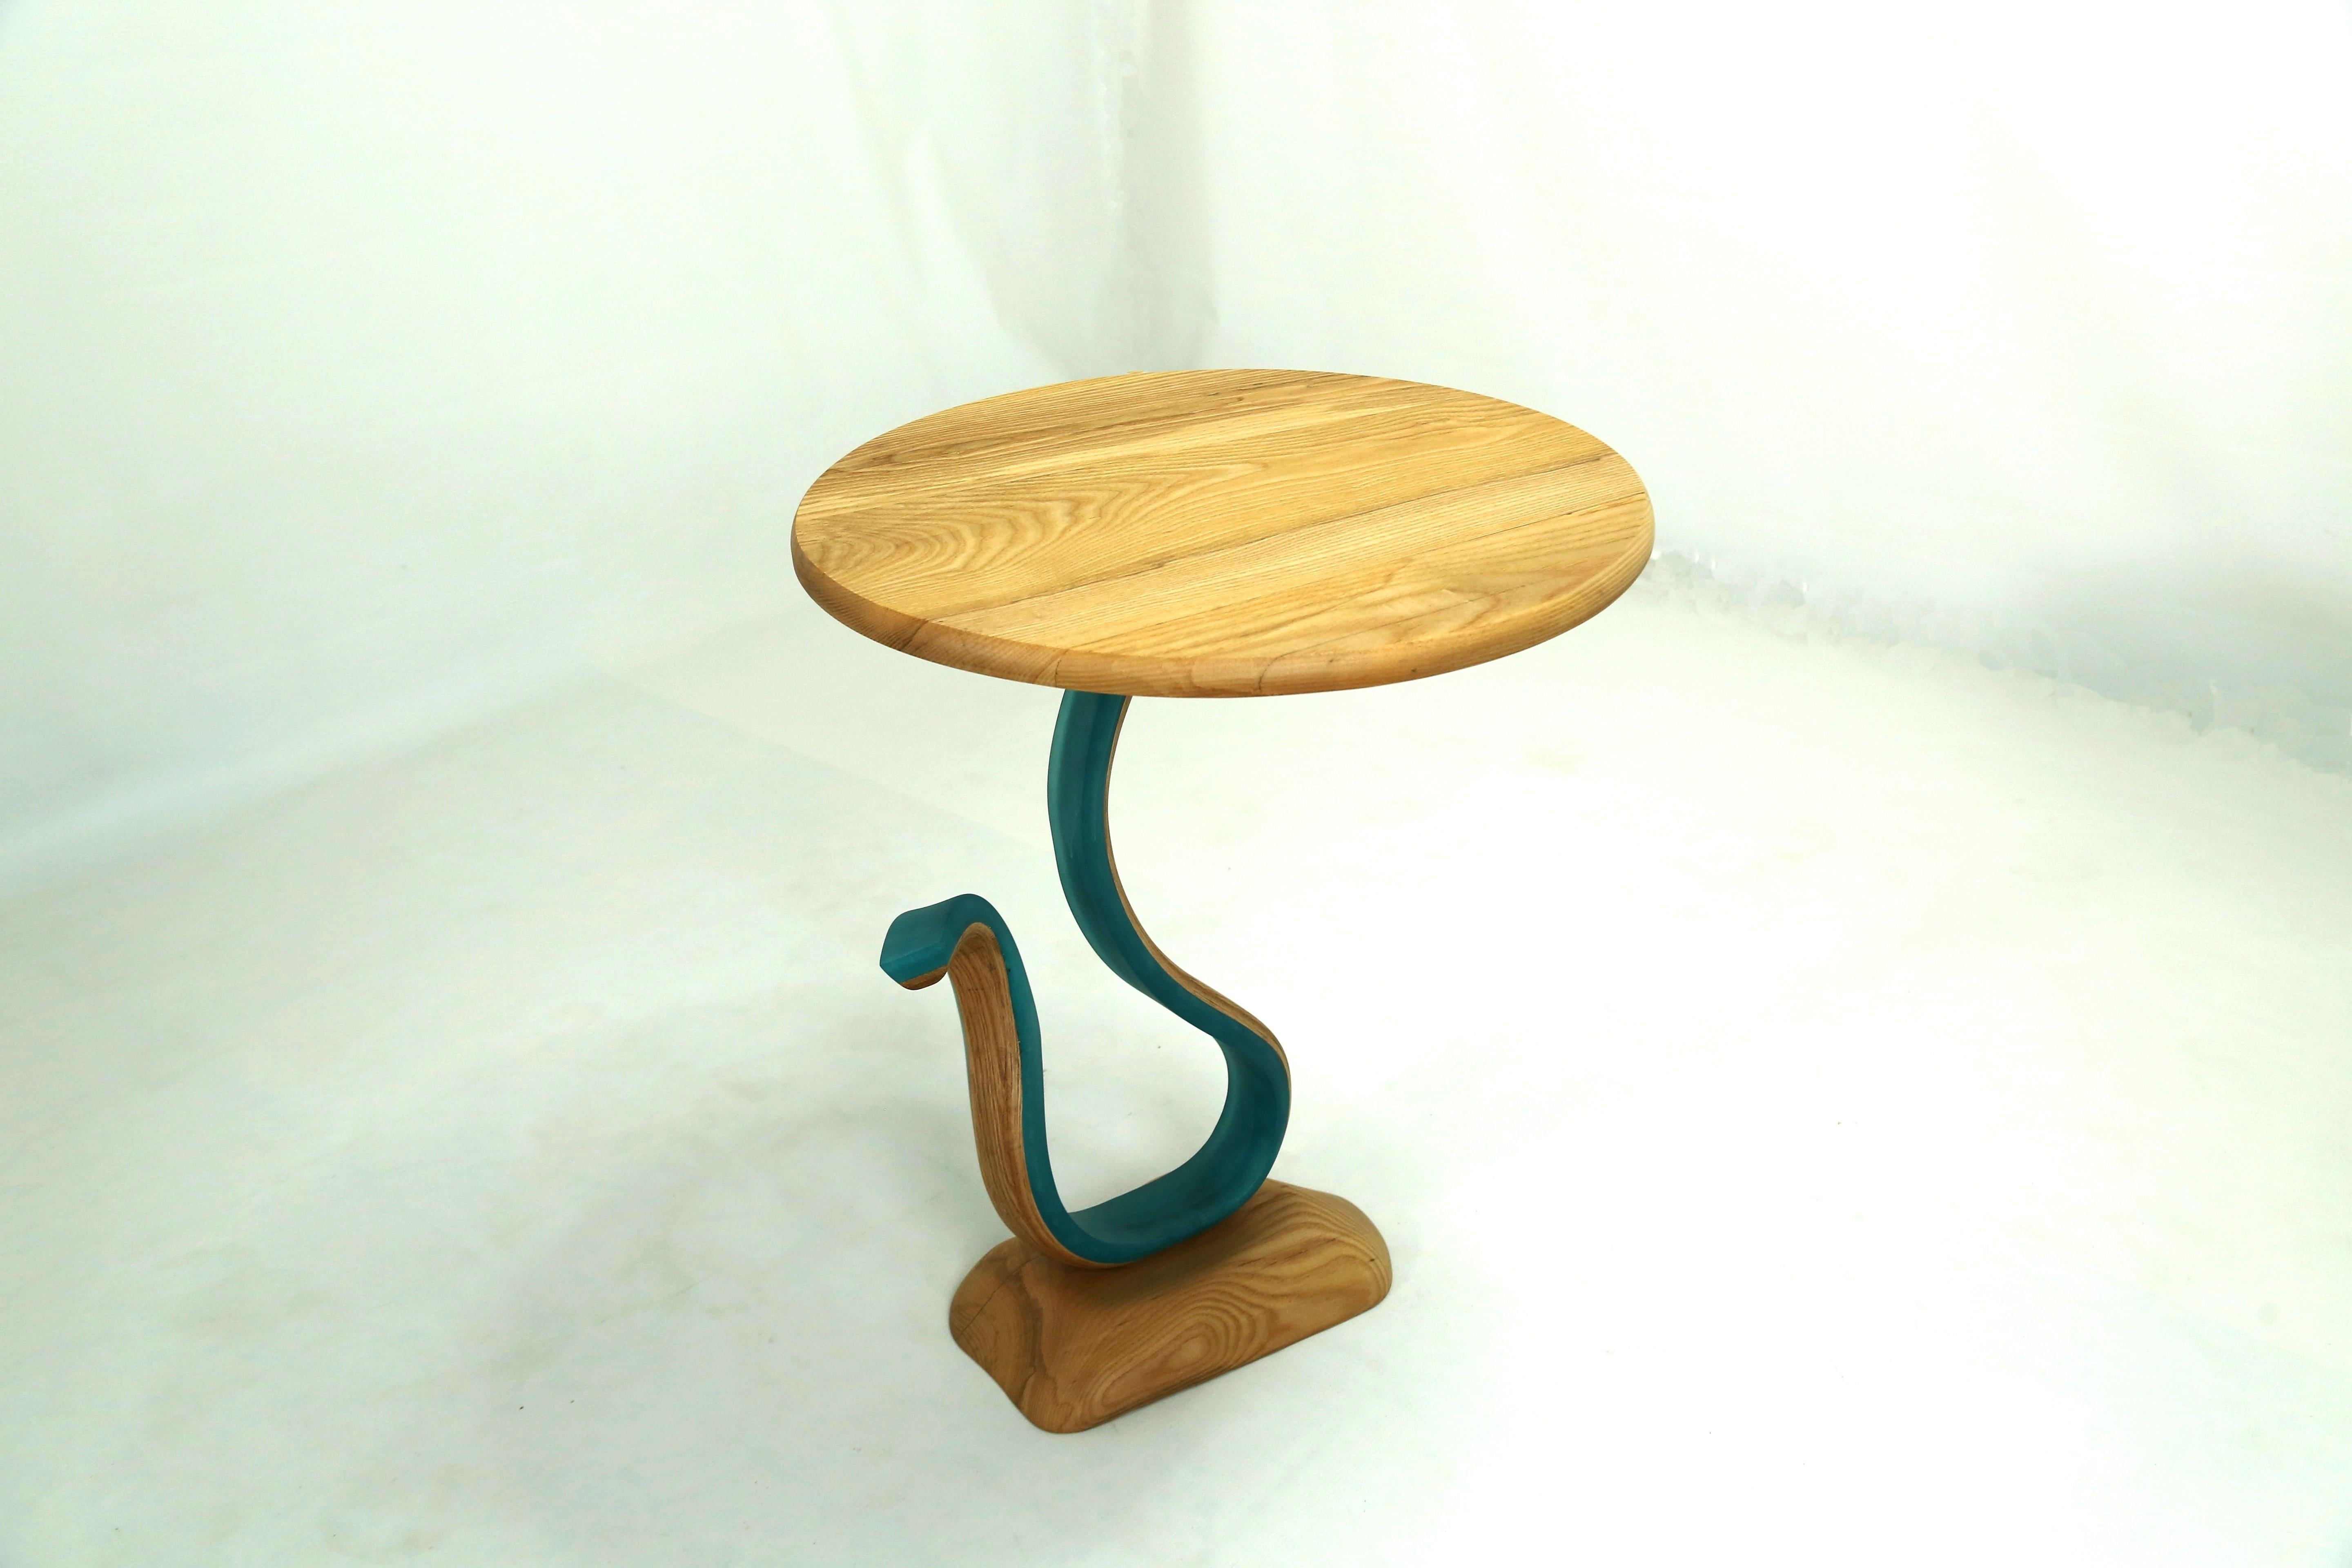 Der Sterope Table ist ein Beistelltisch mit einer runden Eschenholzplatte und einem frei geformten Sockel. Der Körper des Stücks besteht aus Harz, das mit Eschenholzstreifen verschmolzen ist, die sich zusammen drehen und wenden und dem Stück seine